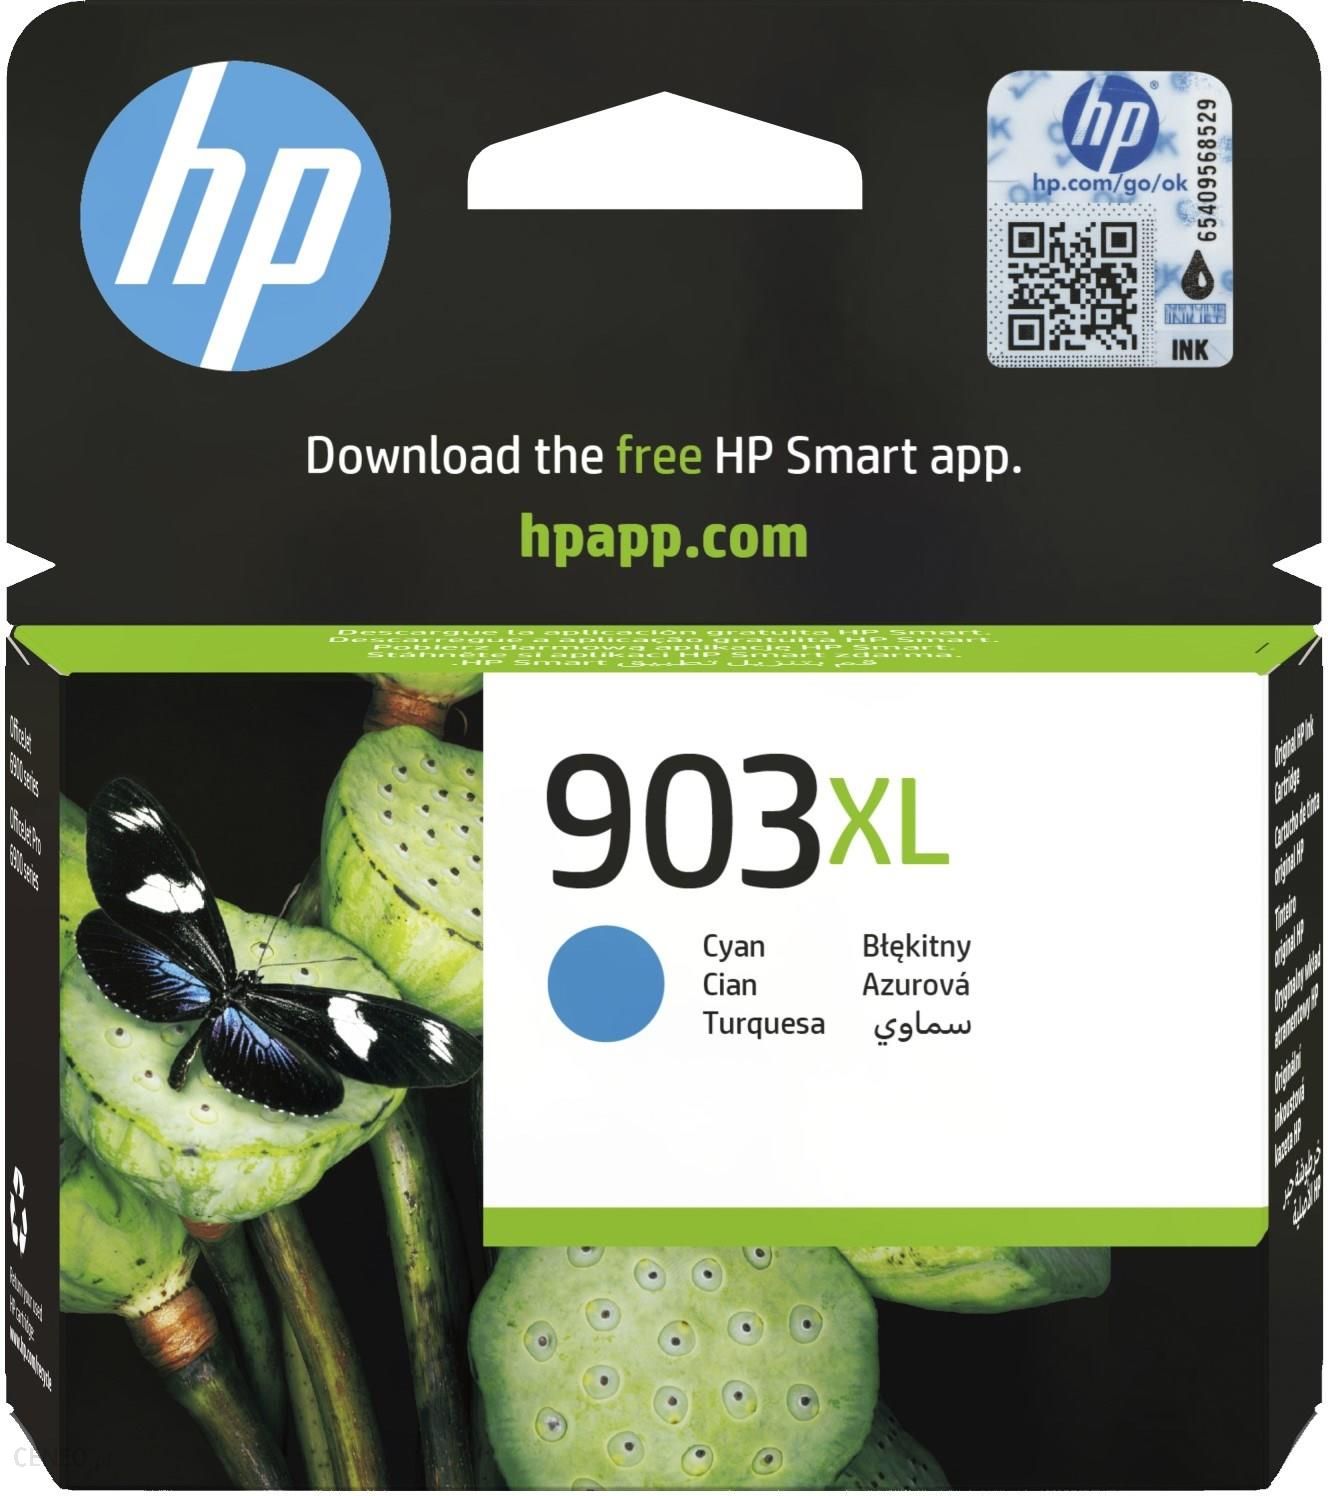 Tusz HP 953XL Błękitny (F6U16AE) do drukarki - Opinie i ceny na